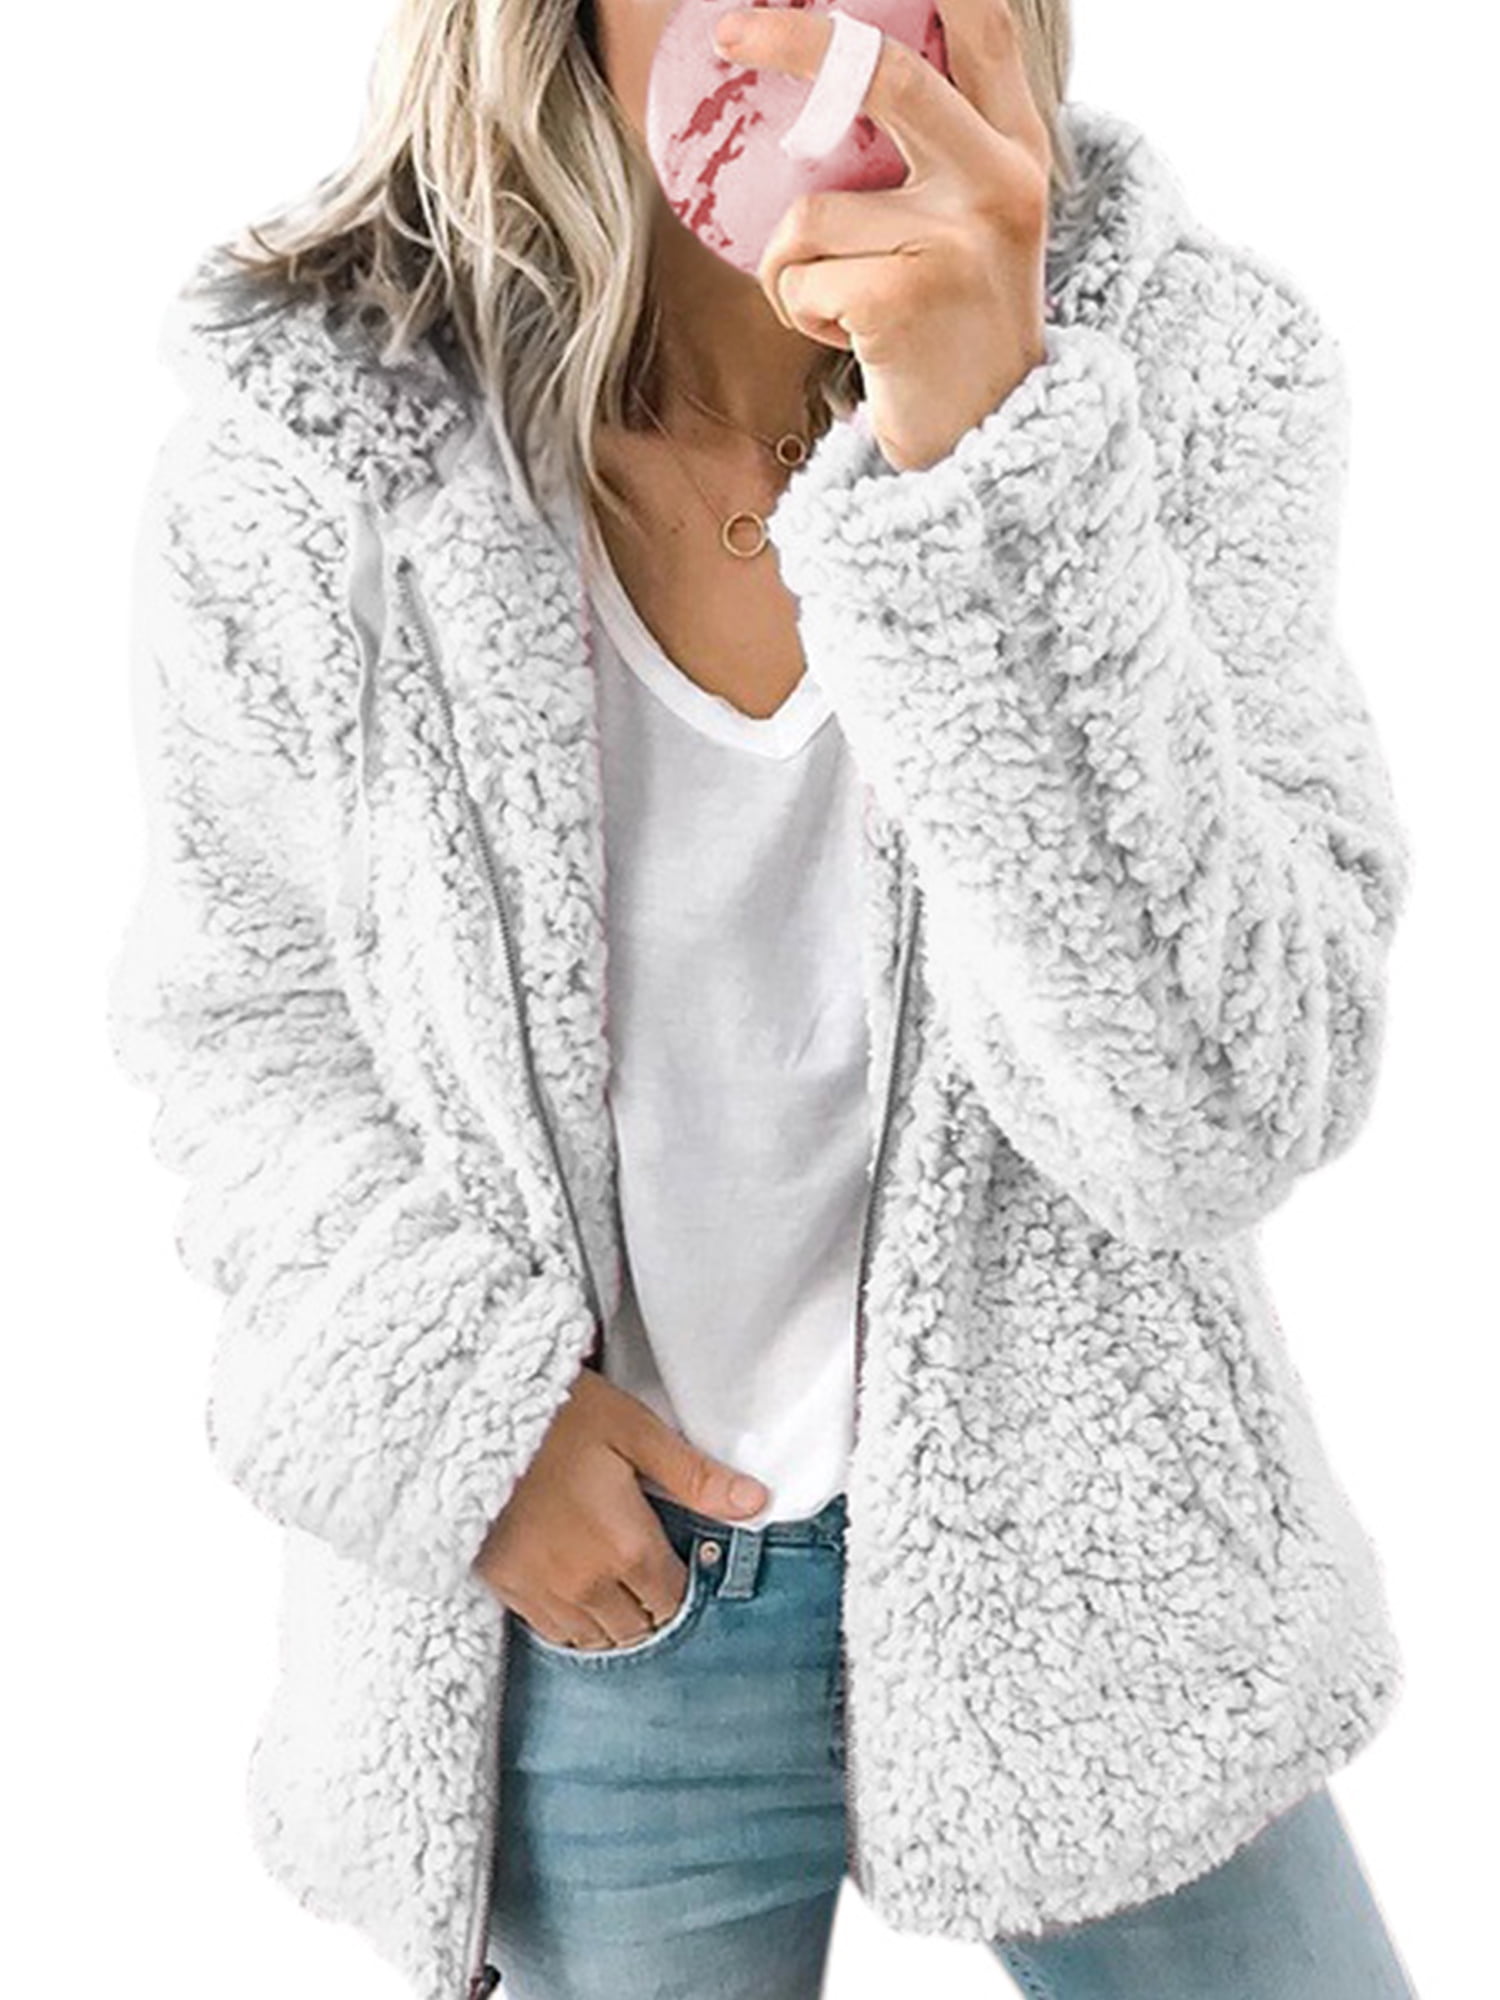 TIMEMEAN Womens Coats Fuzzy Fleece Faux Fur Hooded Zipper Open Front Fluffy Winter Jacket Outwear